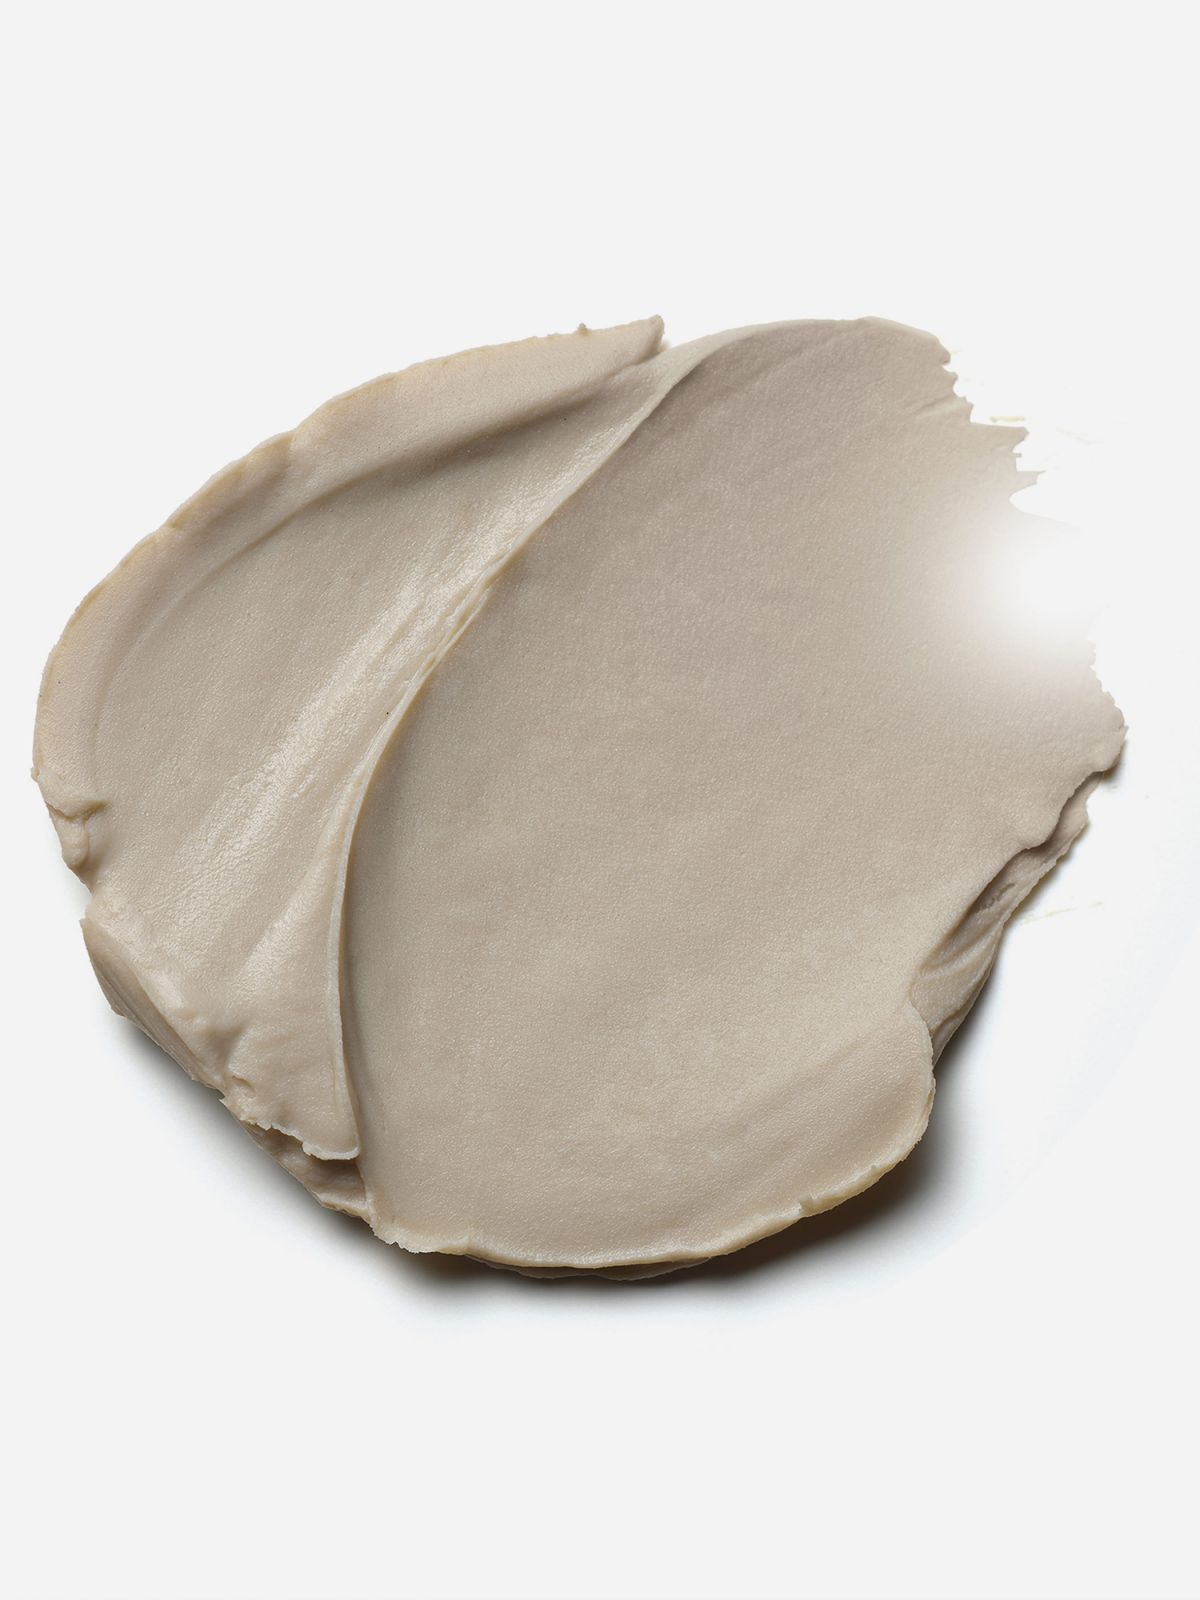  חימר לשיער Texture clay של MOROCCANOIL